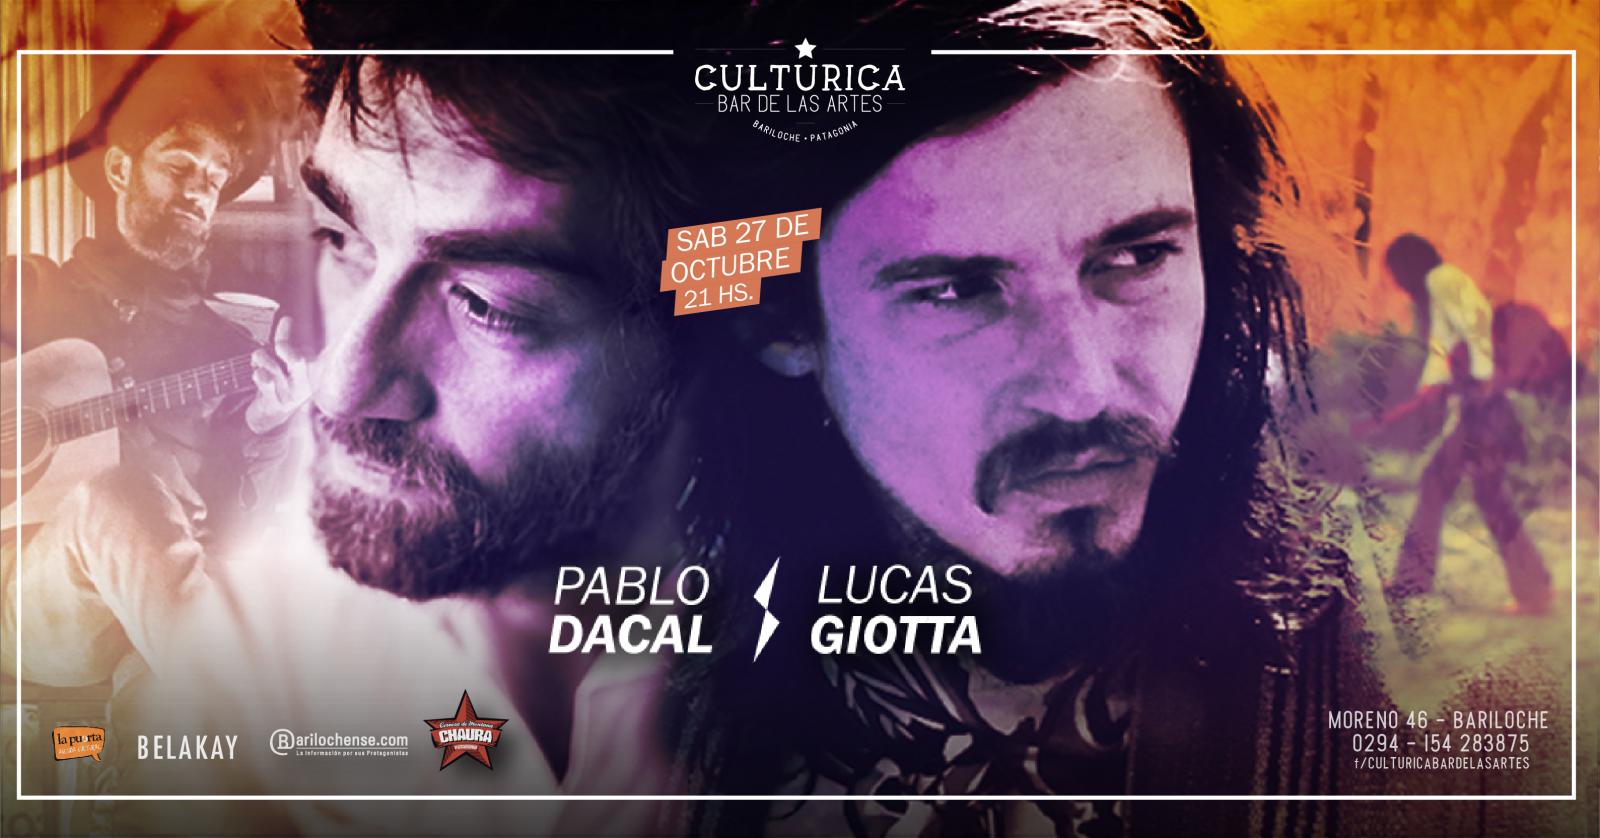 Pablo Dacal & Lucas Giotta en conciertos